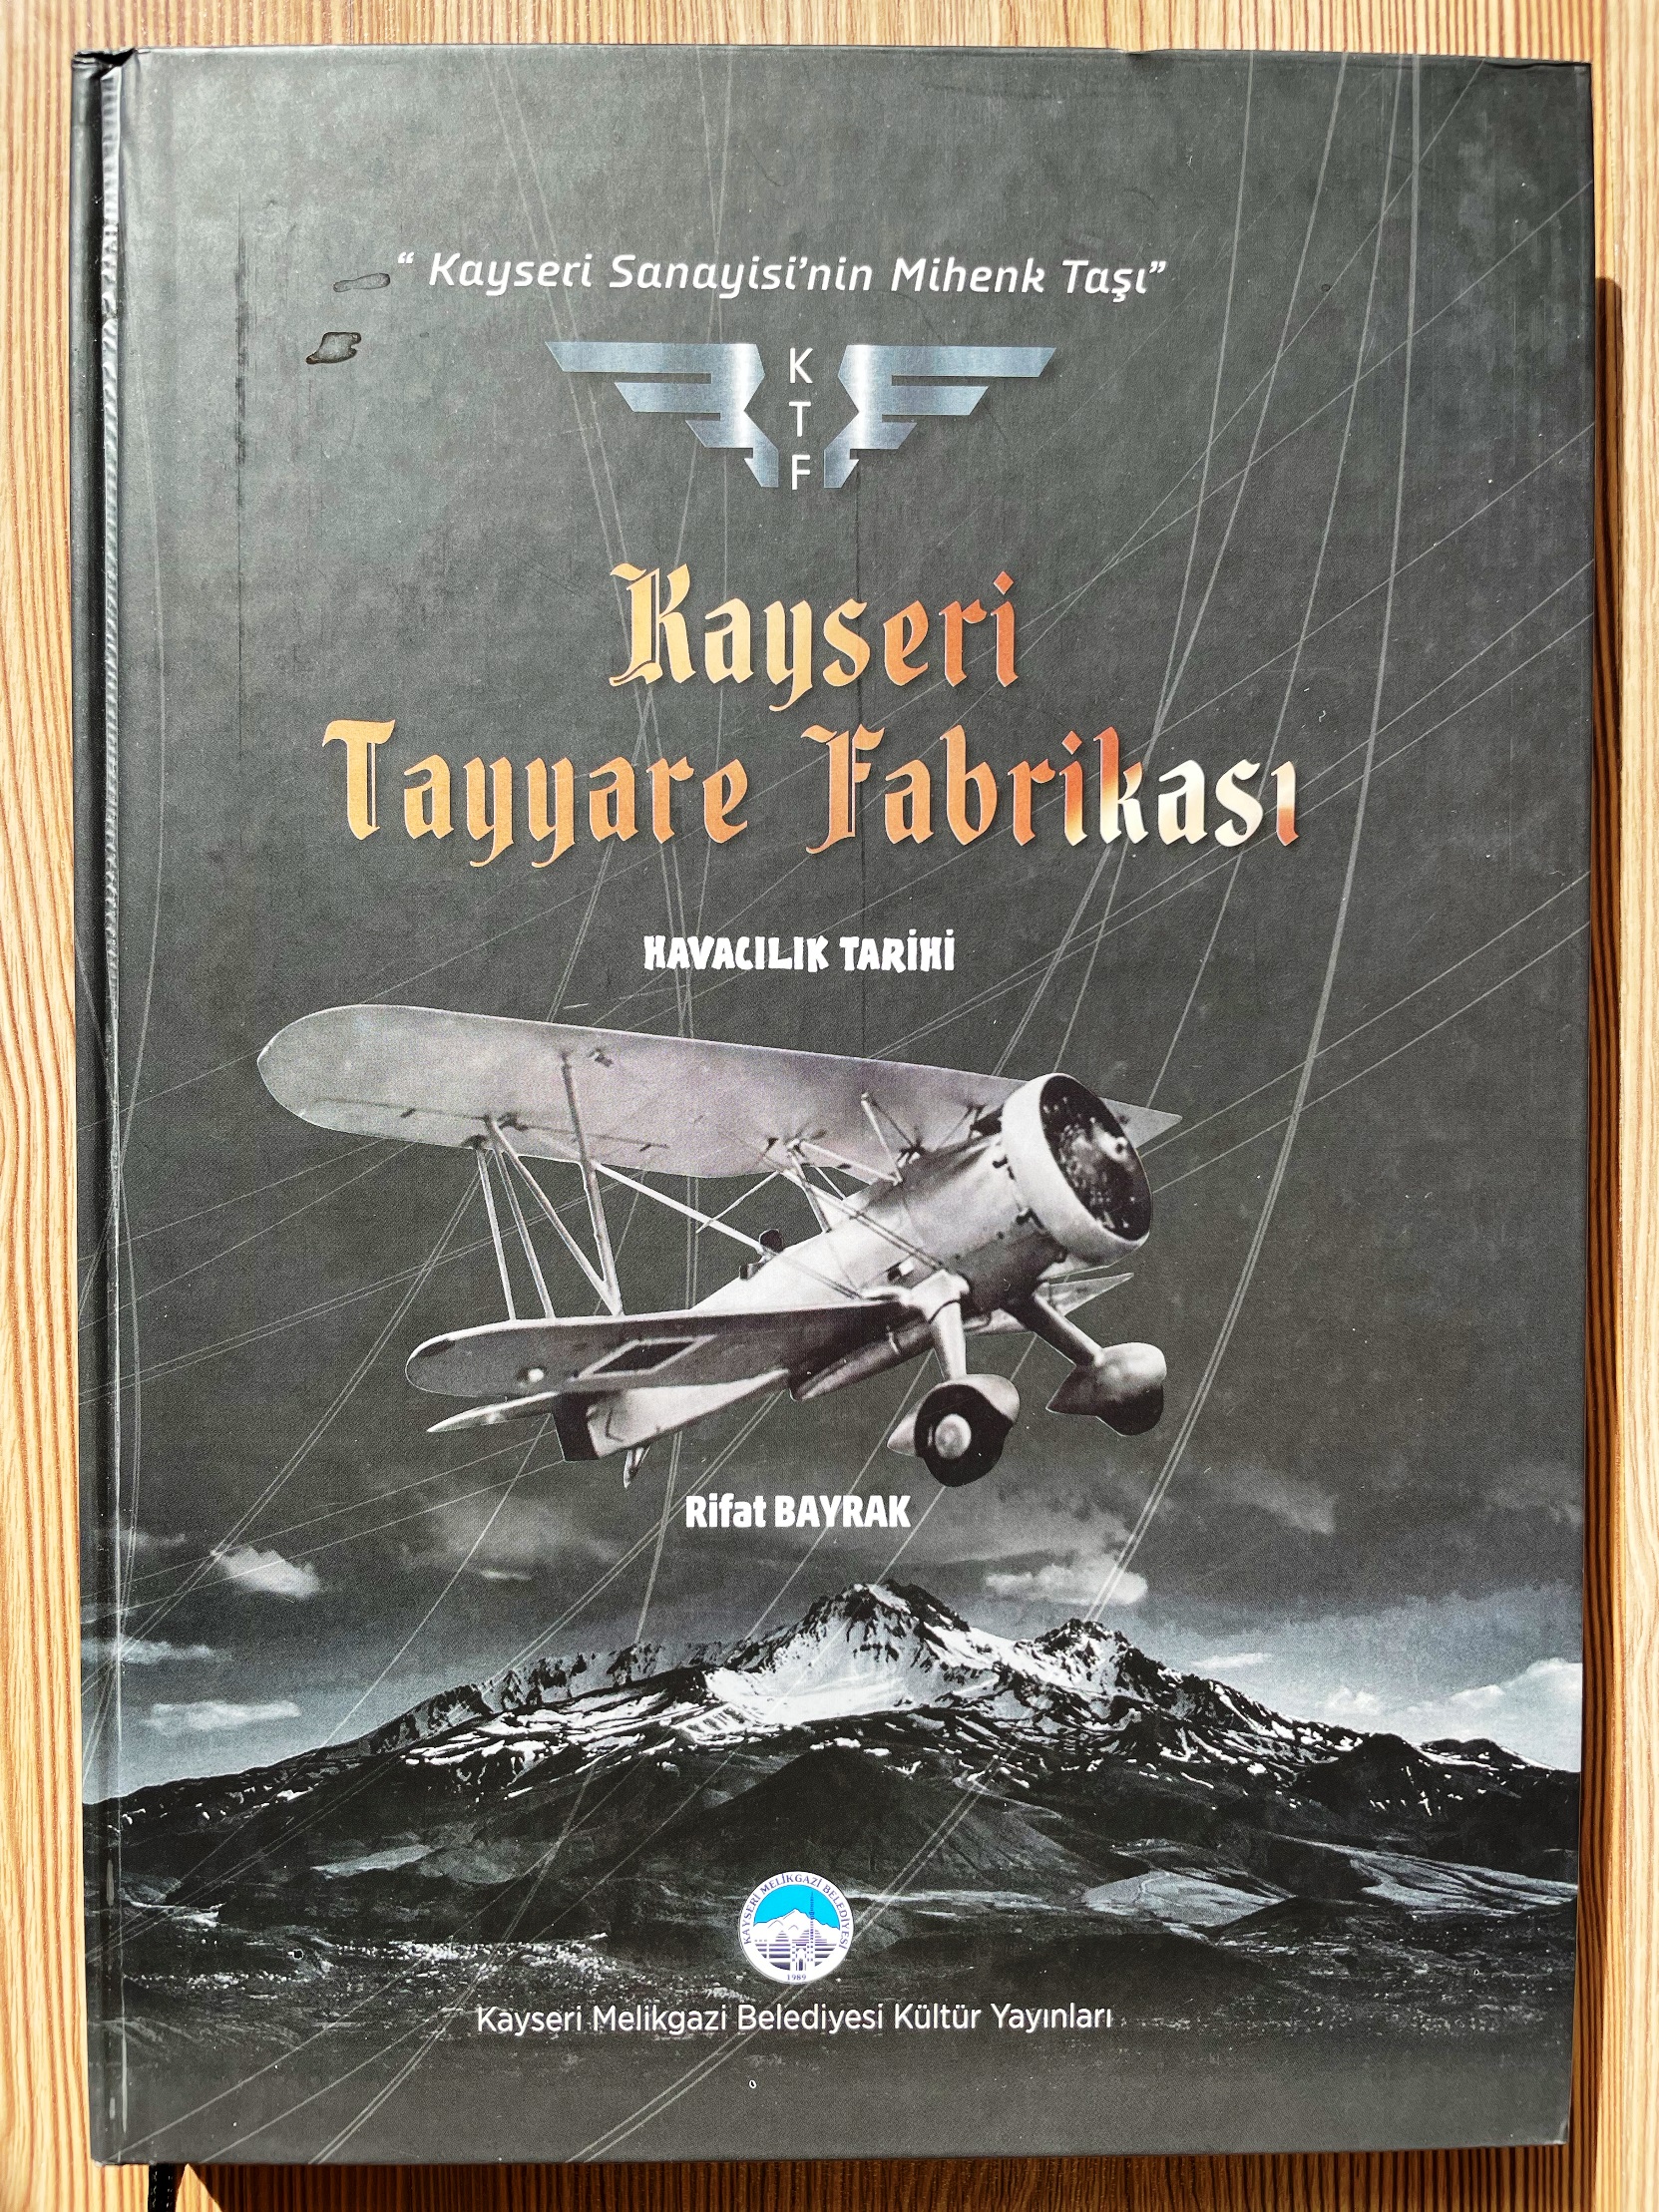 Kitap Notları: Kayseri Tayyare Fabrikası